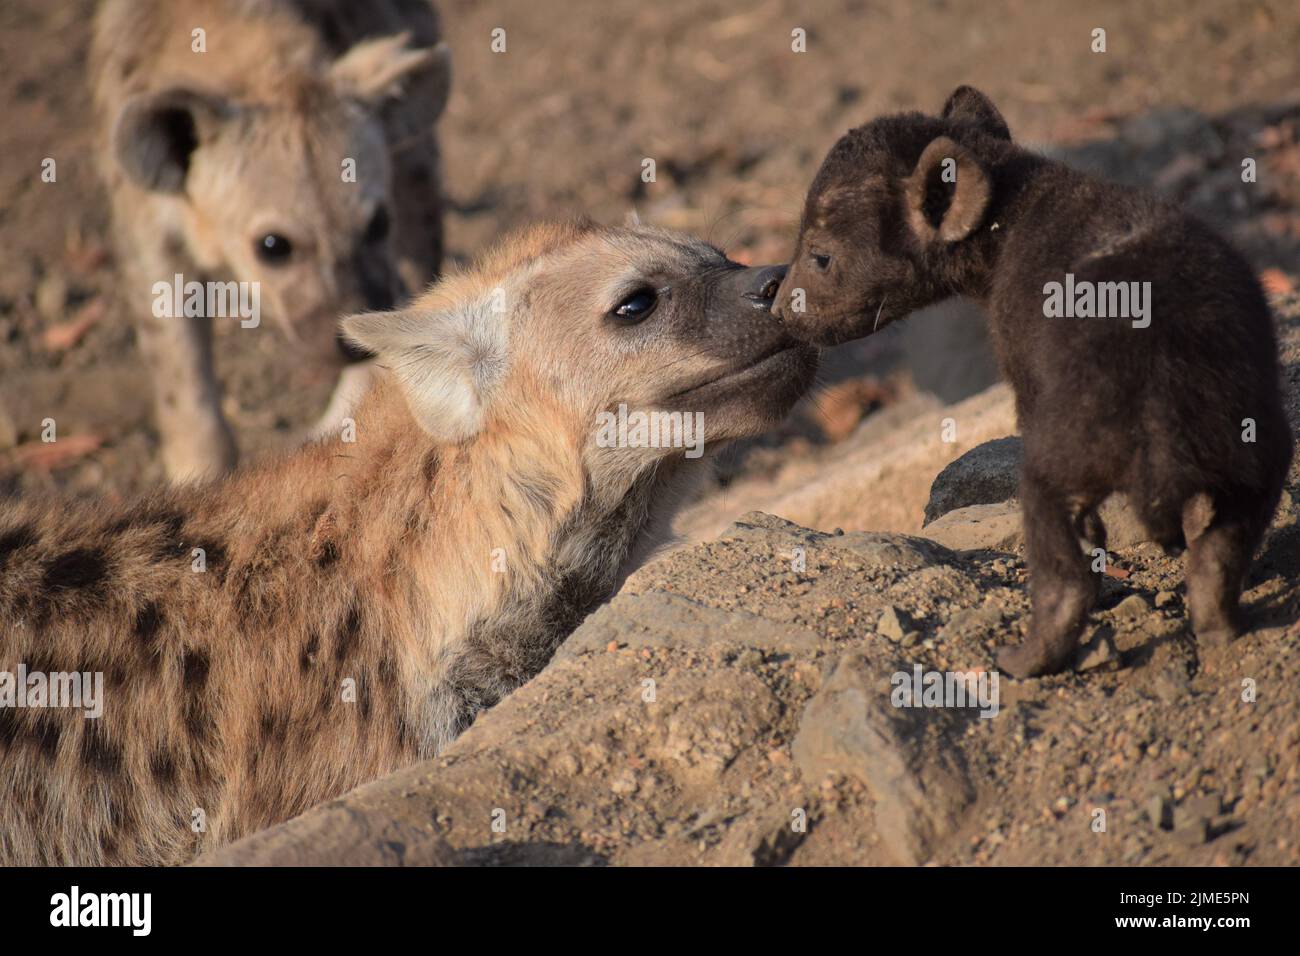 Junge gefleckte Hyäne stellt sich einem jüngeren Geschwister vor, der mit einem dunkelbraunen Mantel ganz anders aussieht. Ein anderer Bruder schaut neugierig zu. Stockfoto